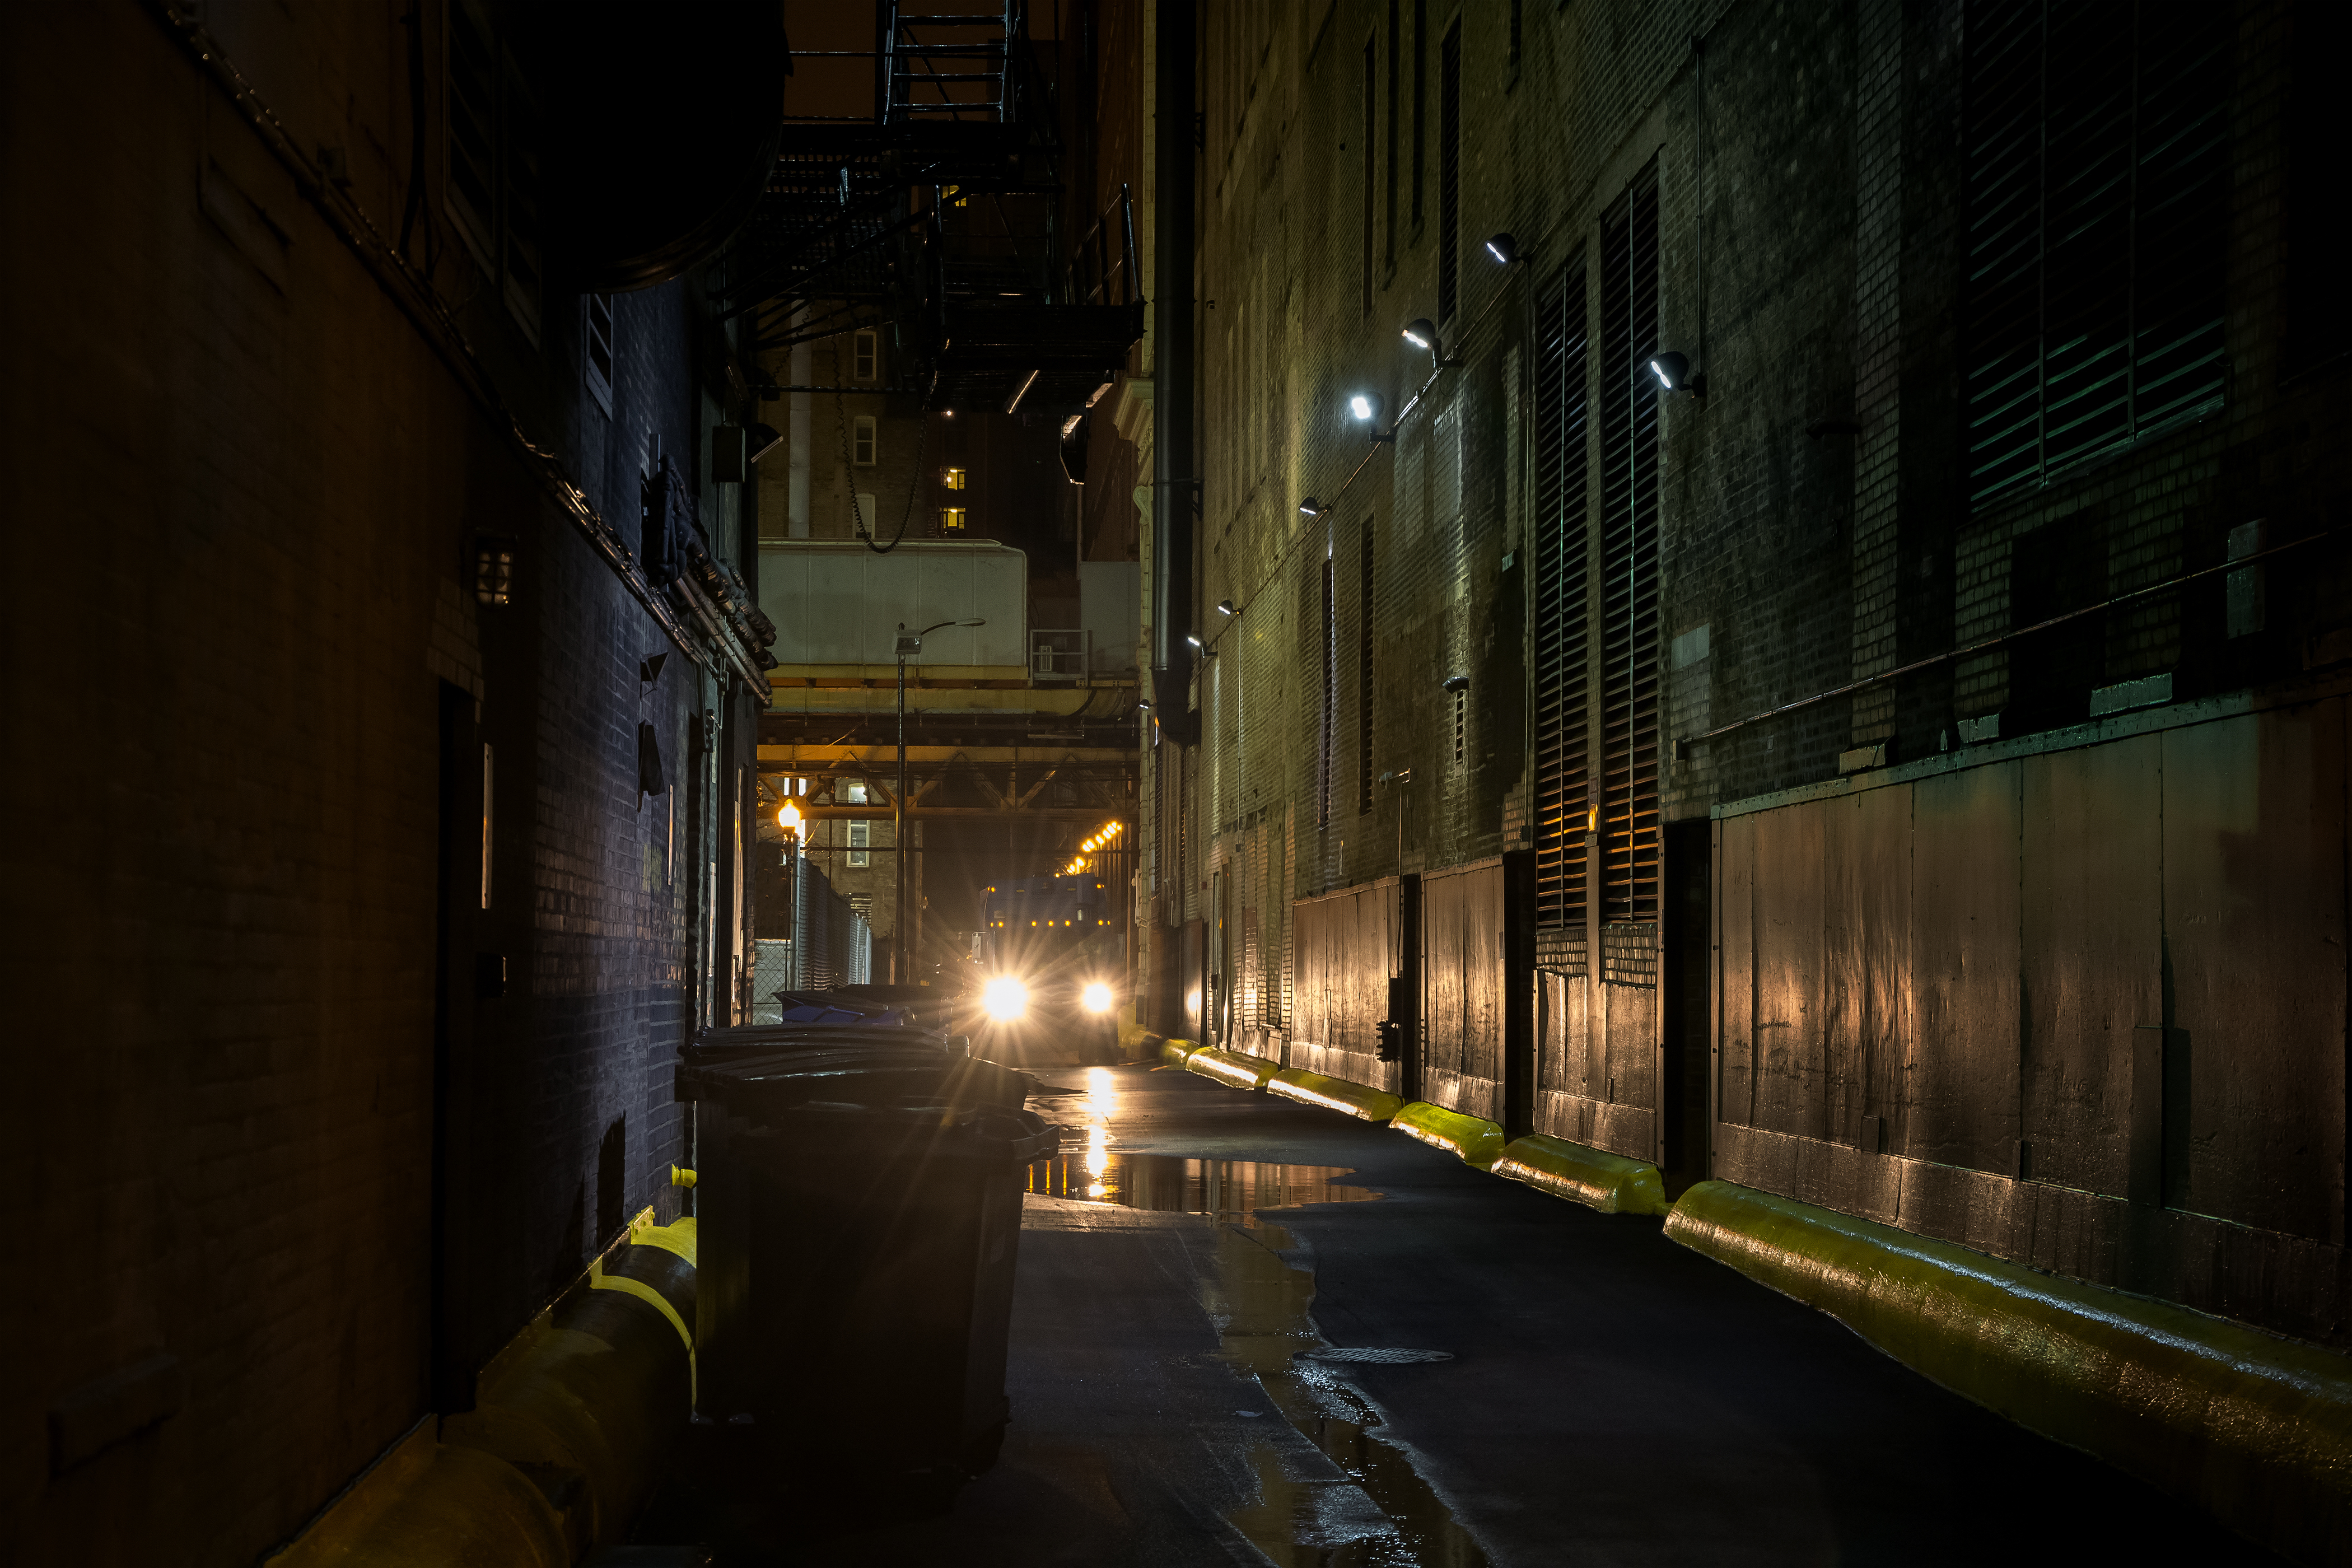 Dark Urban Alley at Night | Source: Shutterstock